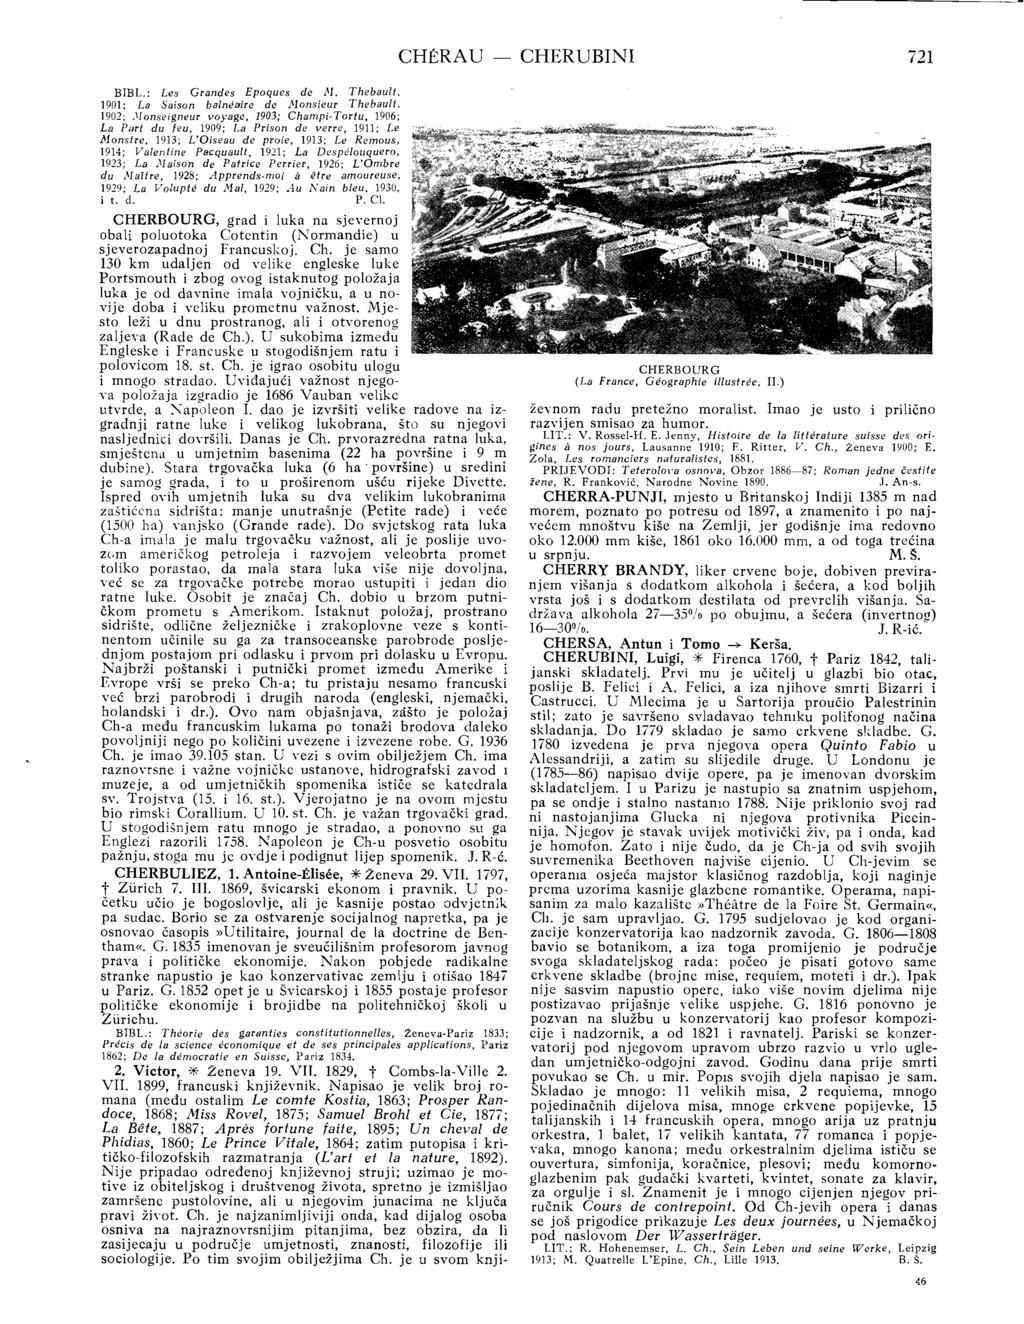 CHERAU - CHERUBINI 721 BIEL.: Les Grandes Epoques de M. Thebault. 1901: La Saison balmiaire de Monsieur Thebault.